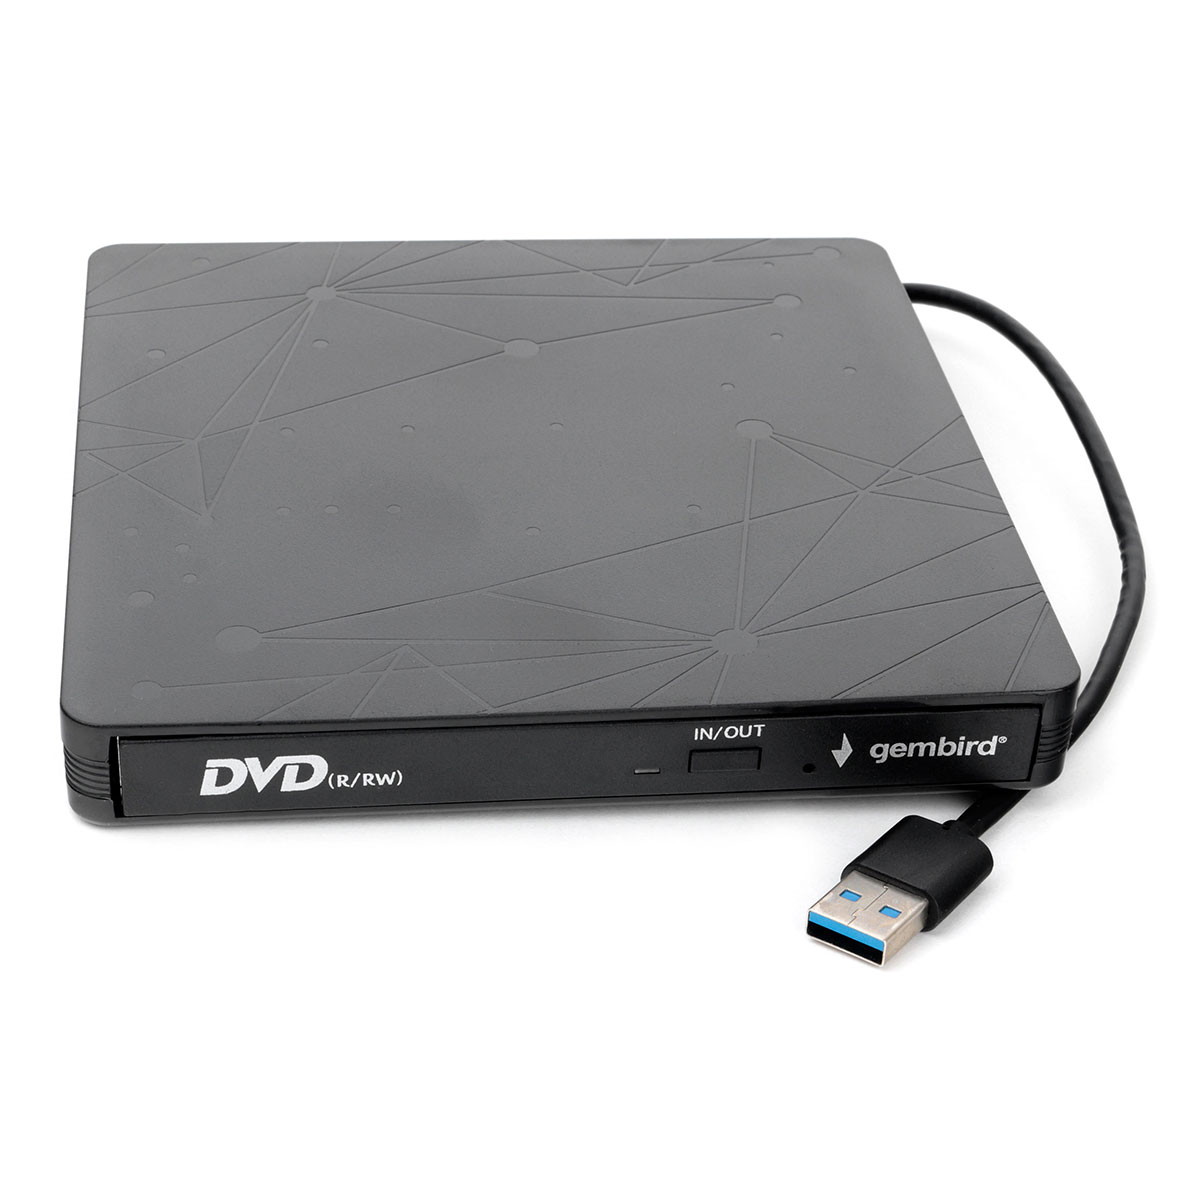 Gembird Lecteur De DVD Externe DVD-USB-03